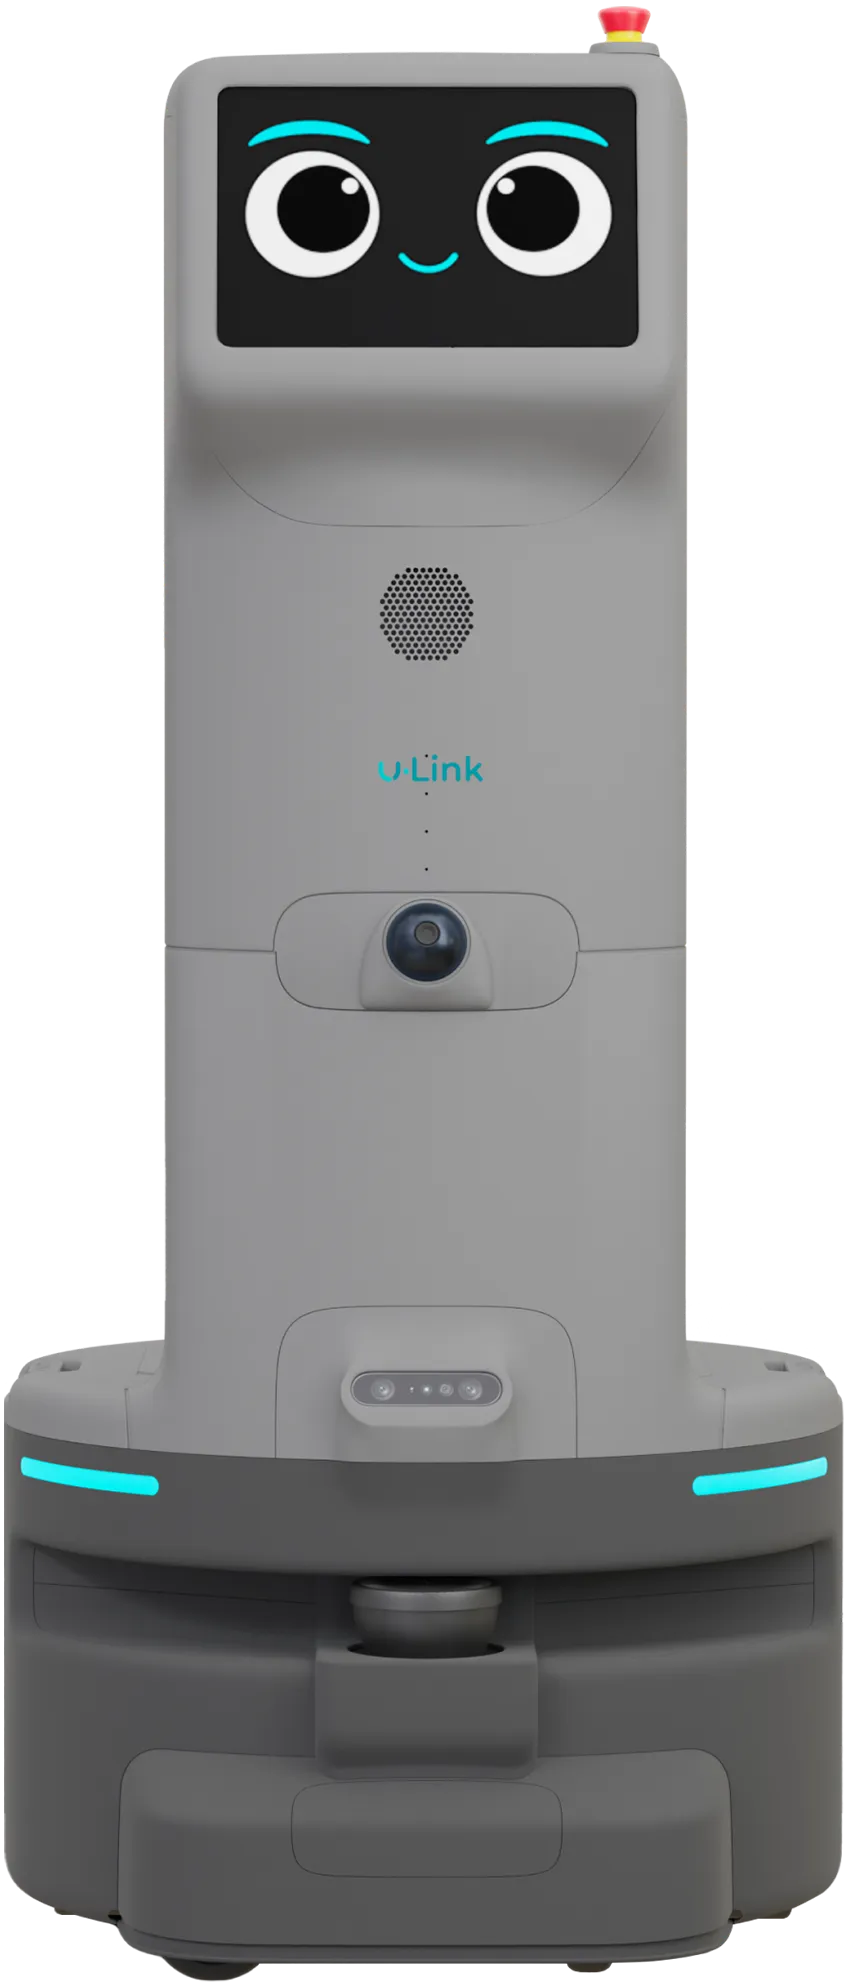 ULink robot - Front side